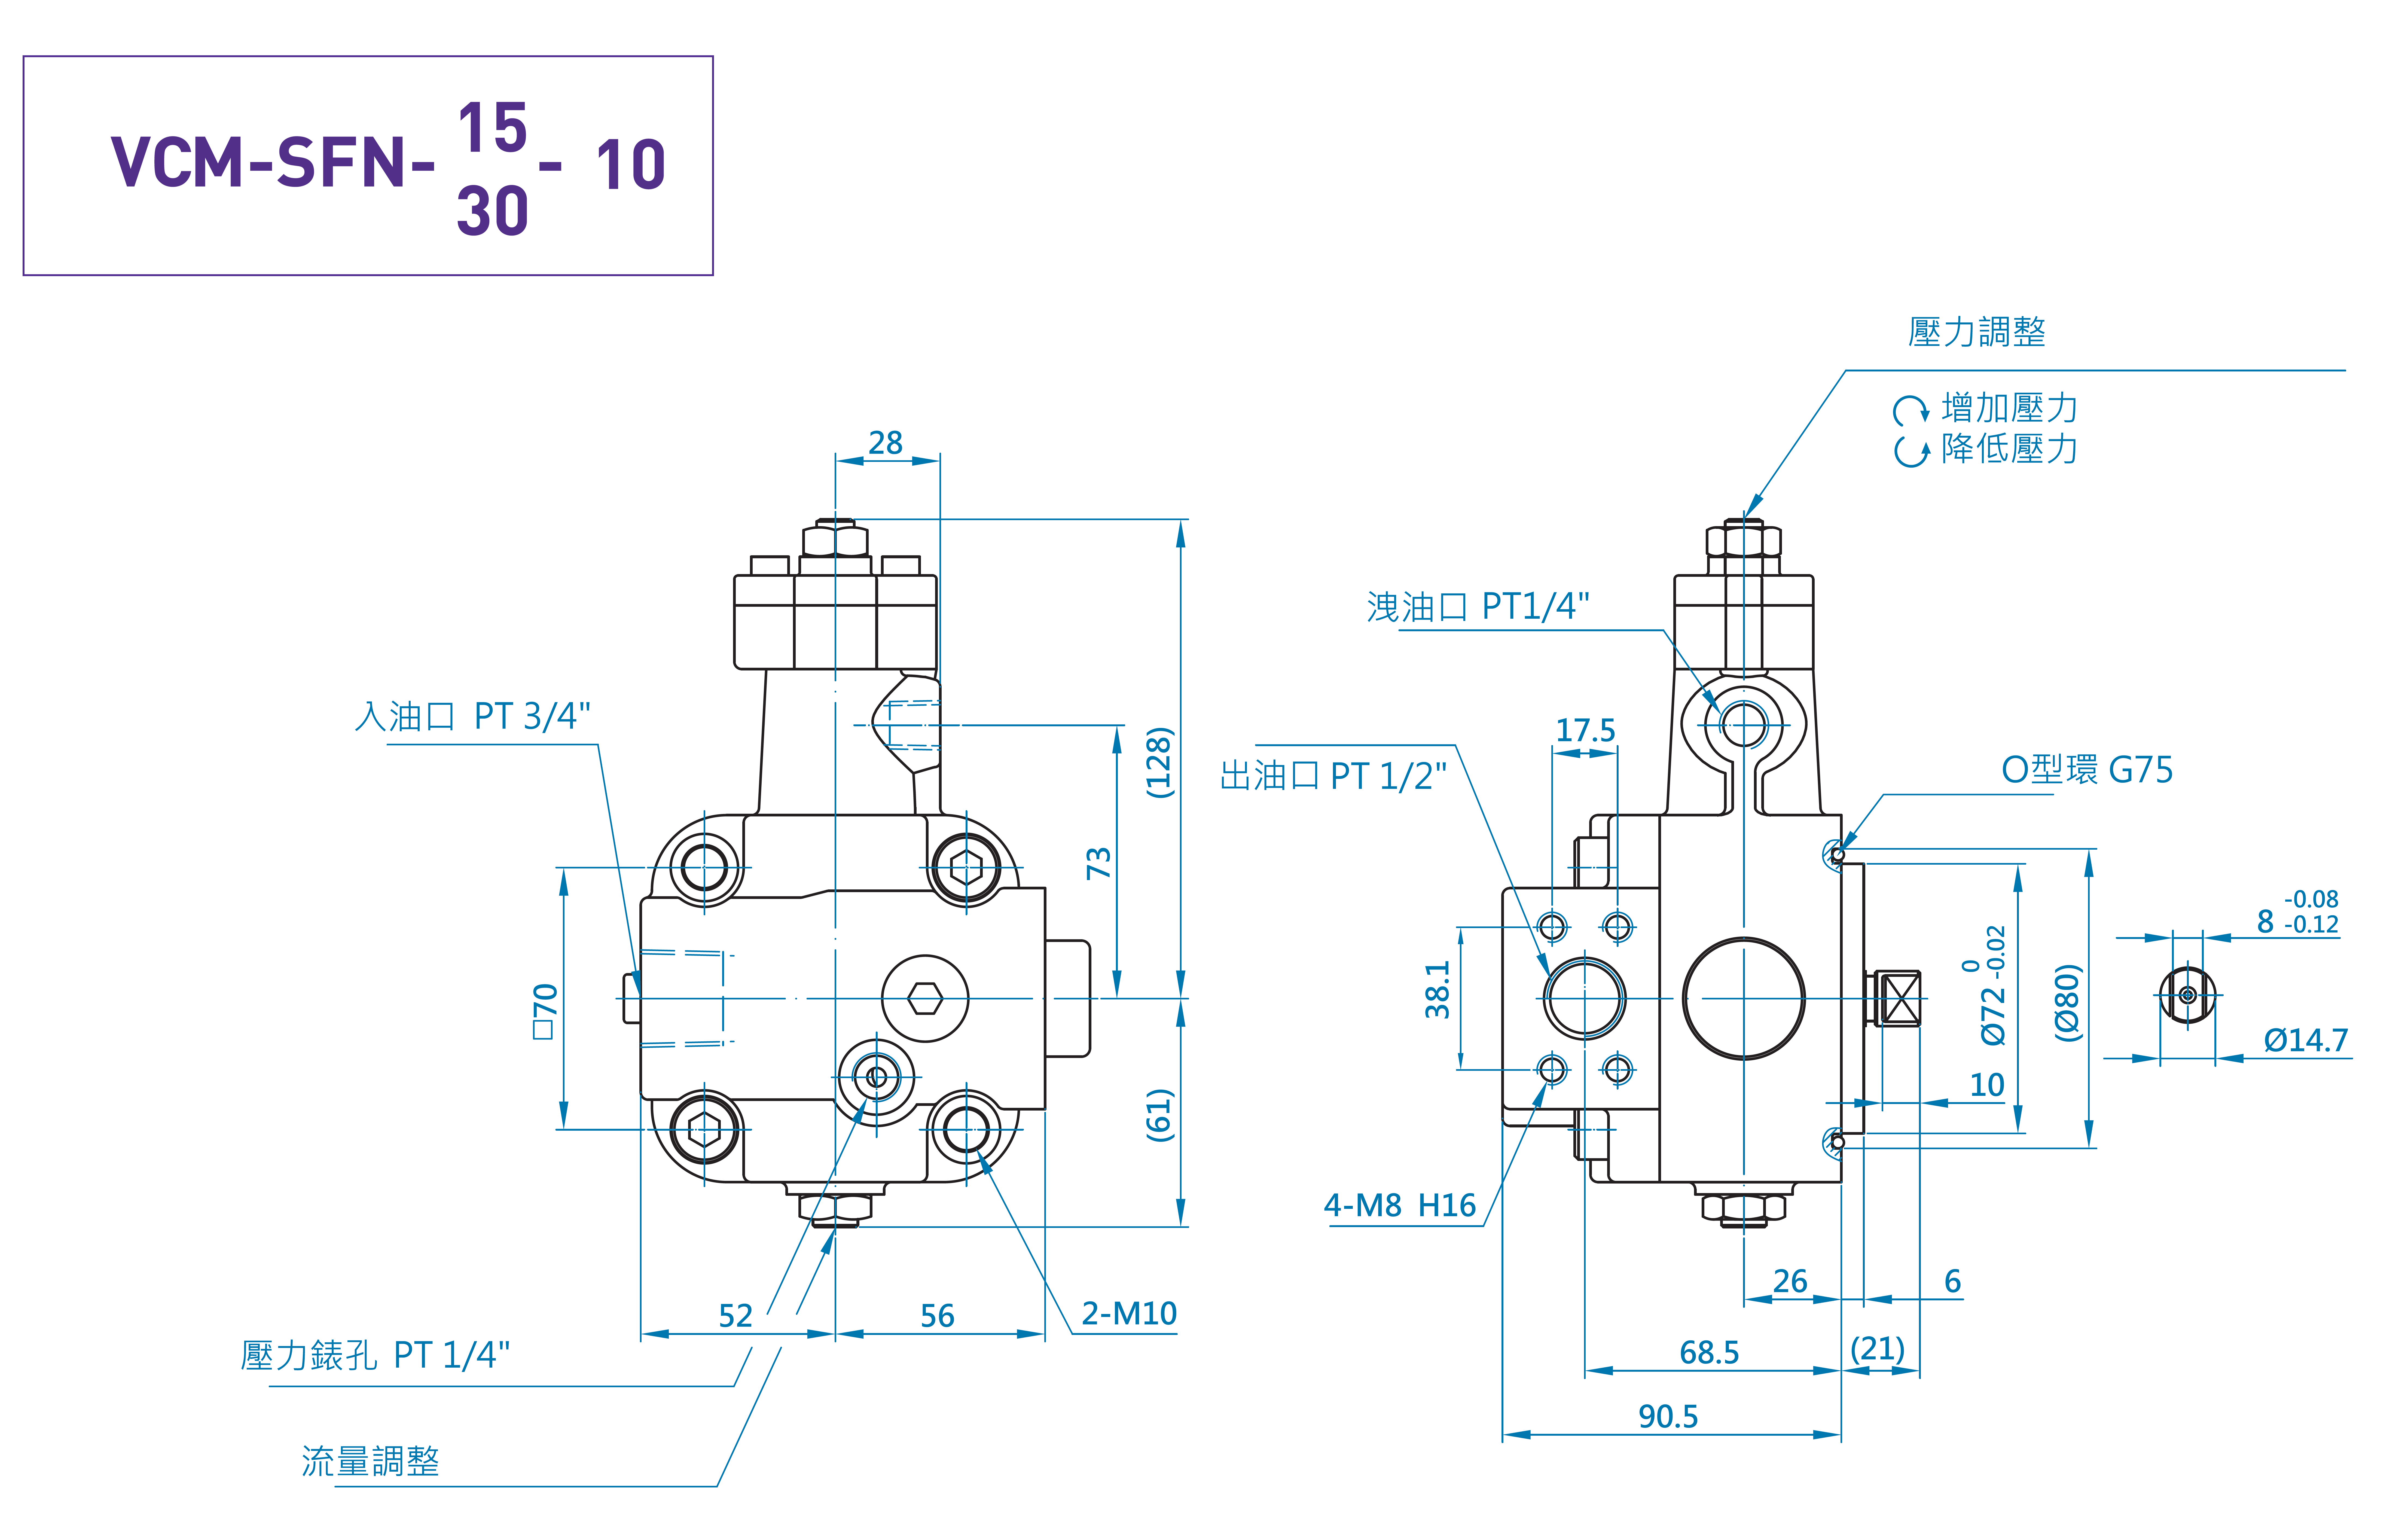 CML Bomba de Palhetas Variáveis Compacta com Válvula de Retenção SFN - Medição, Dimensão, Diagrama